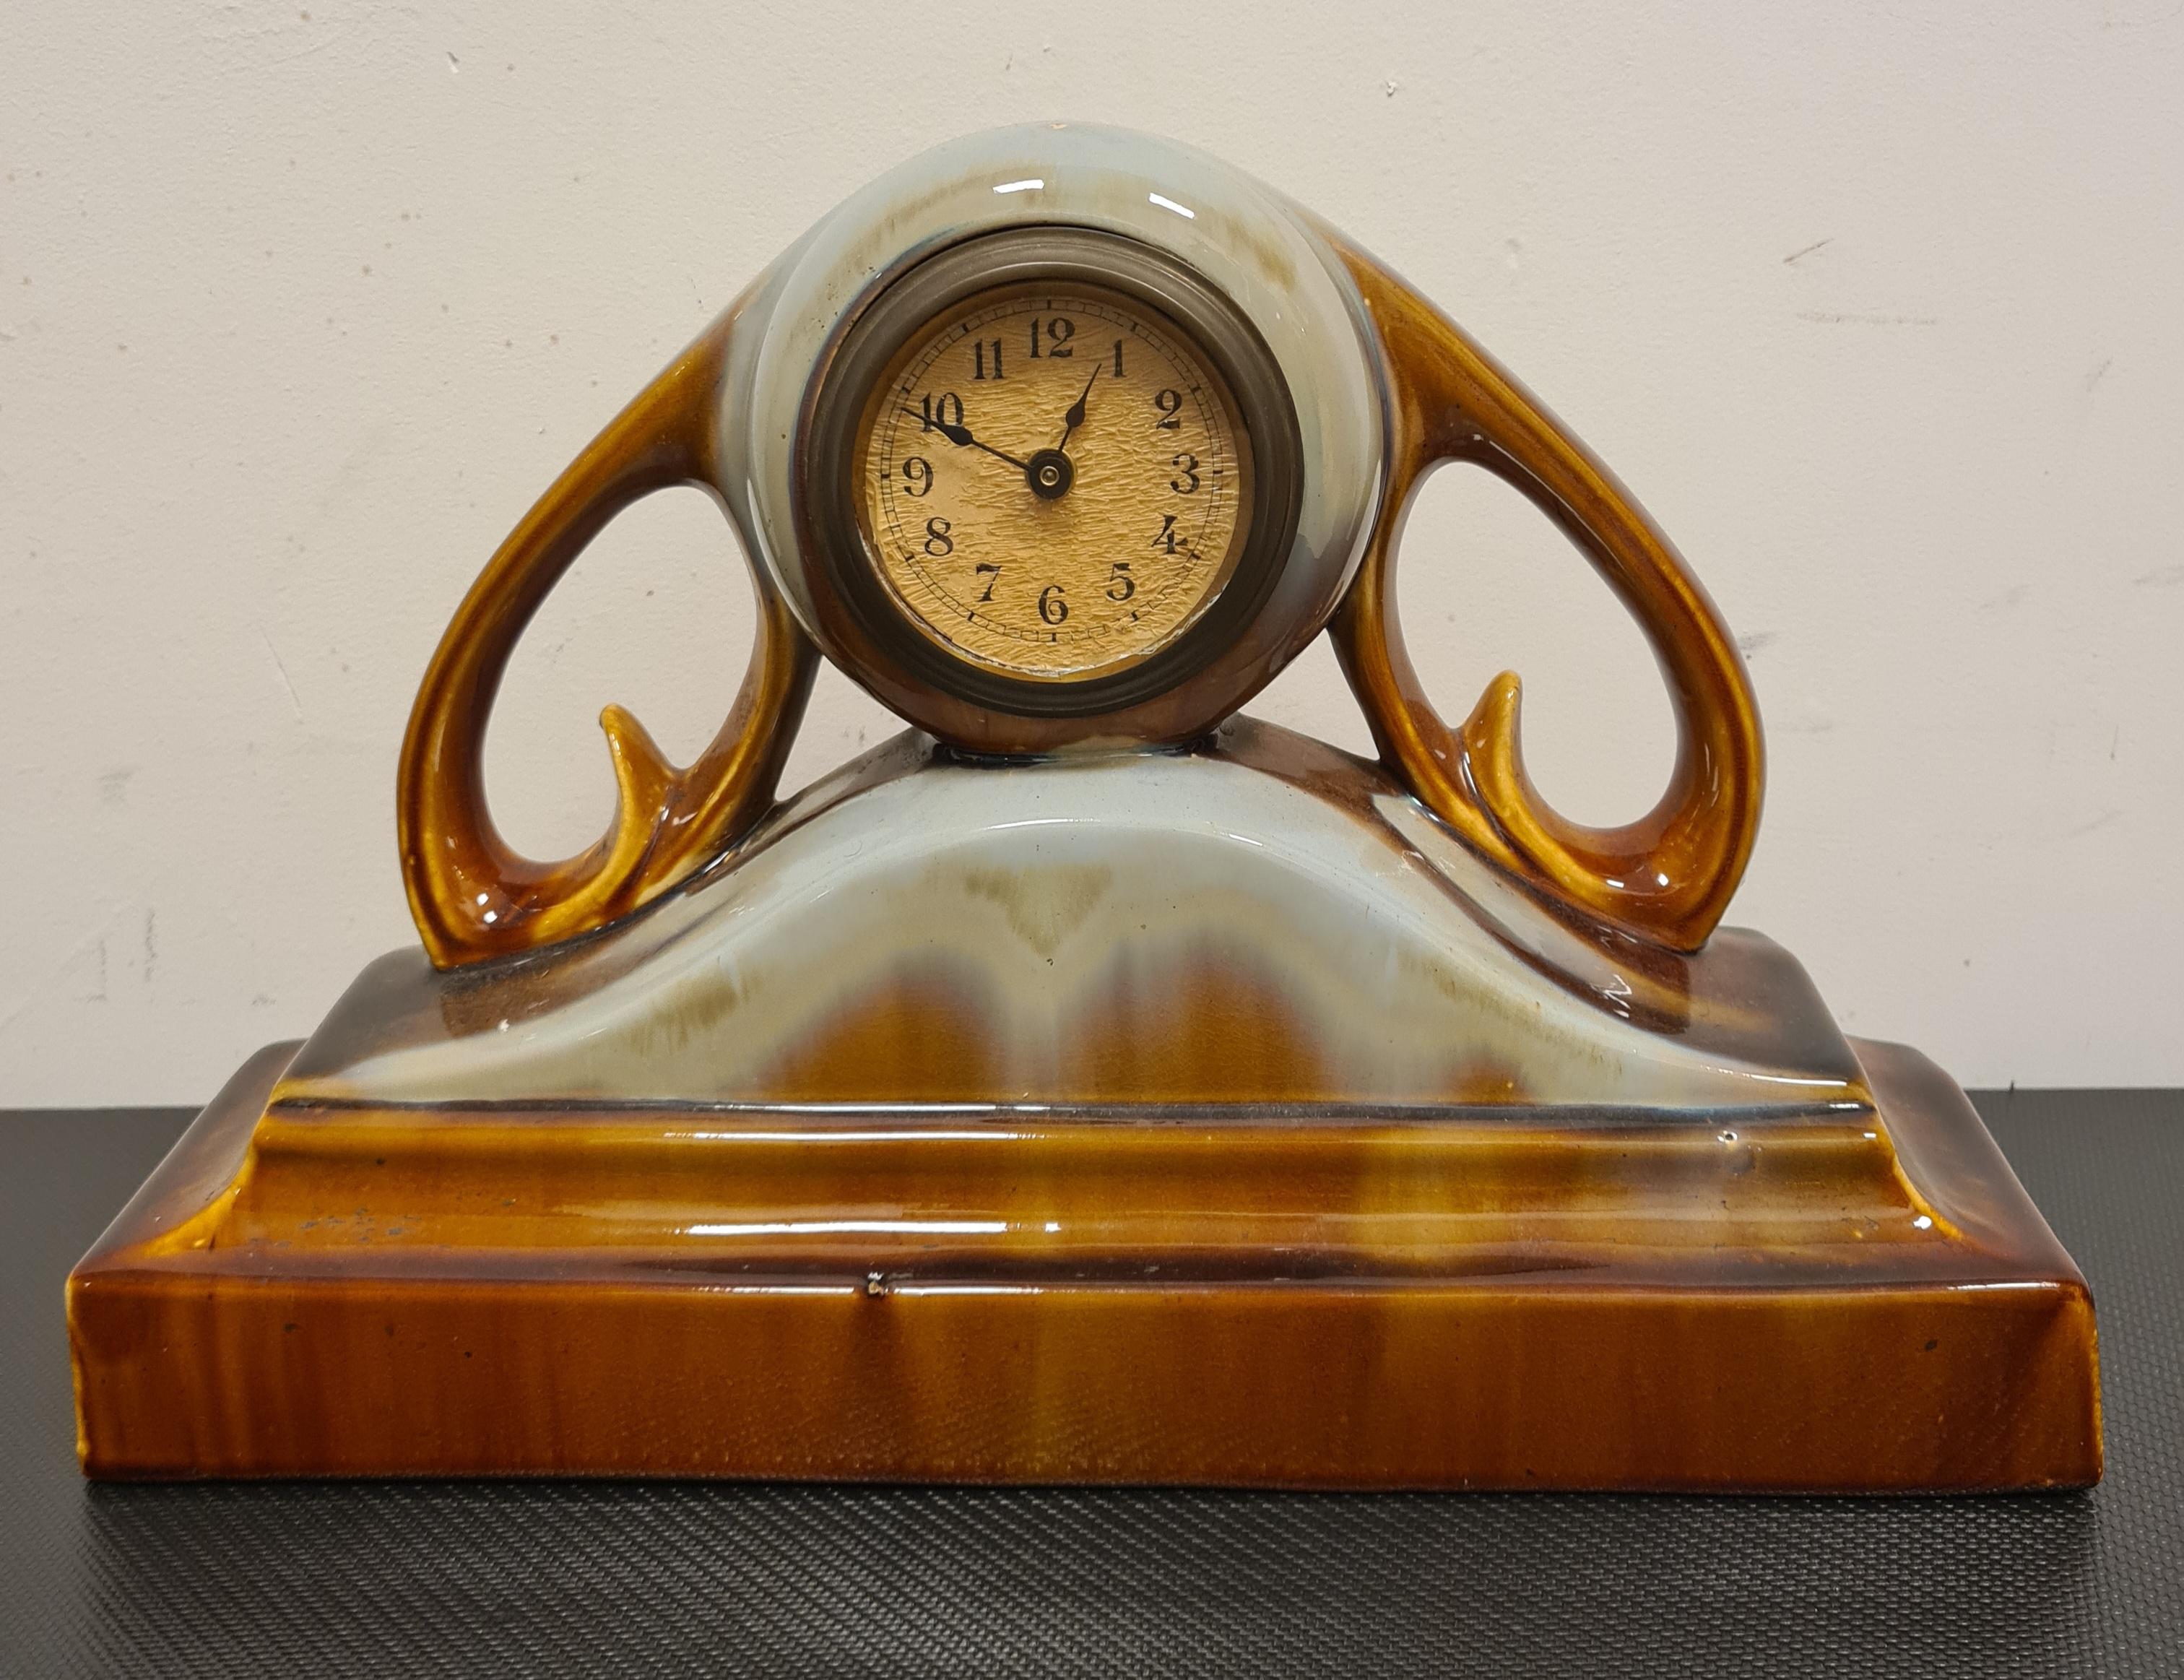 Horloge en céramique des années 1940.

Belle horloge de centre ou de cheminée fabriquée dans les années 1940.

La structure est entièrement réalisée en céramique émaillée dans des tons allant du brun au bleu clair.

La montre est fonctionnelle et